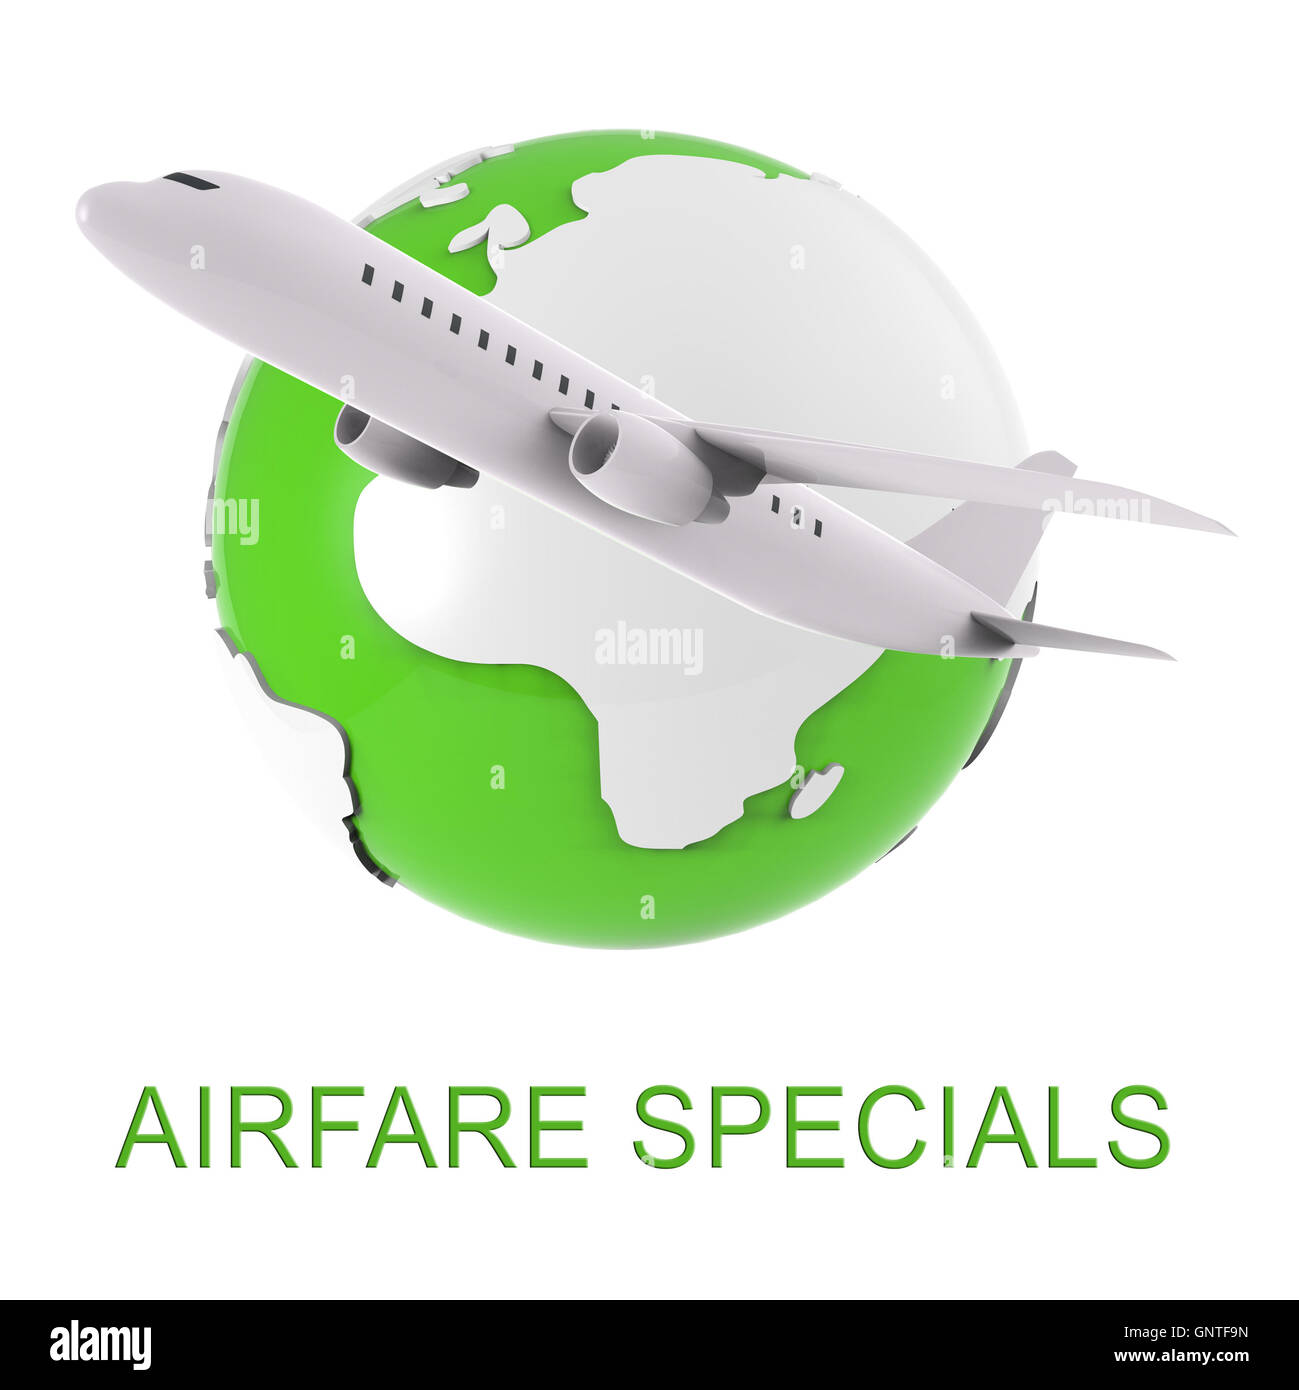 Flug Specials Mittel Flugzeug Förderung 3D-Rendering Stockfoto